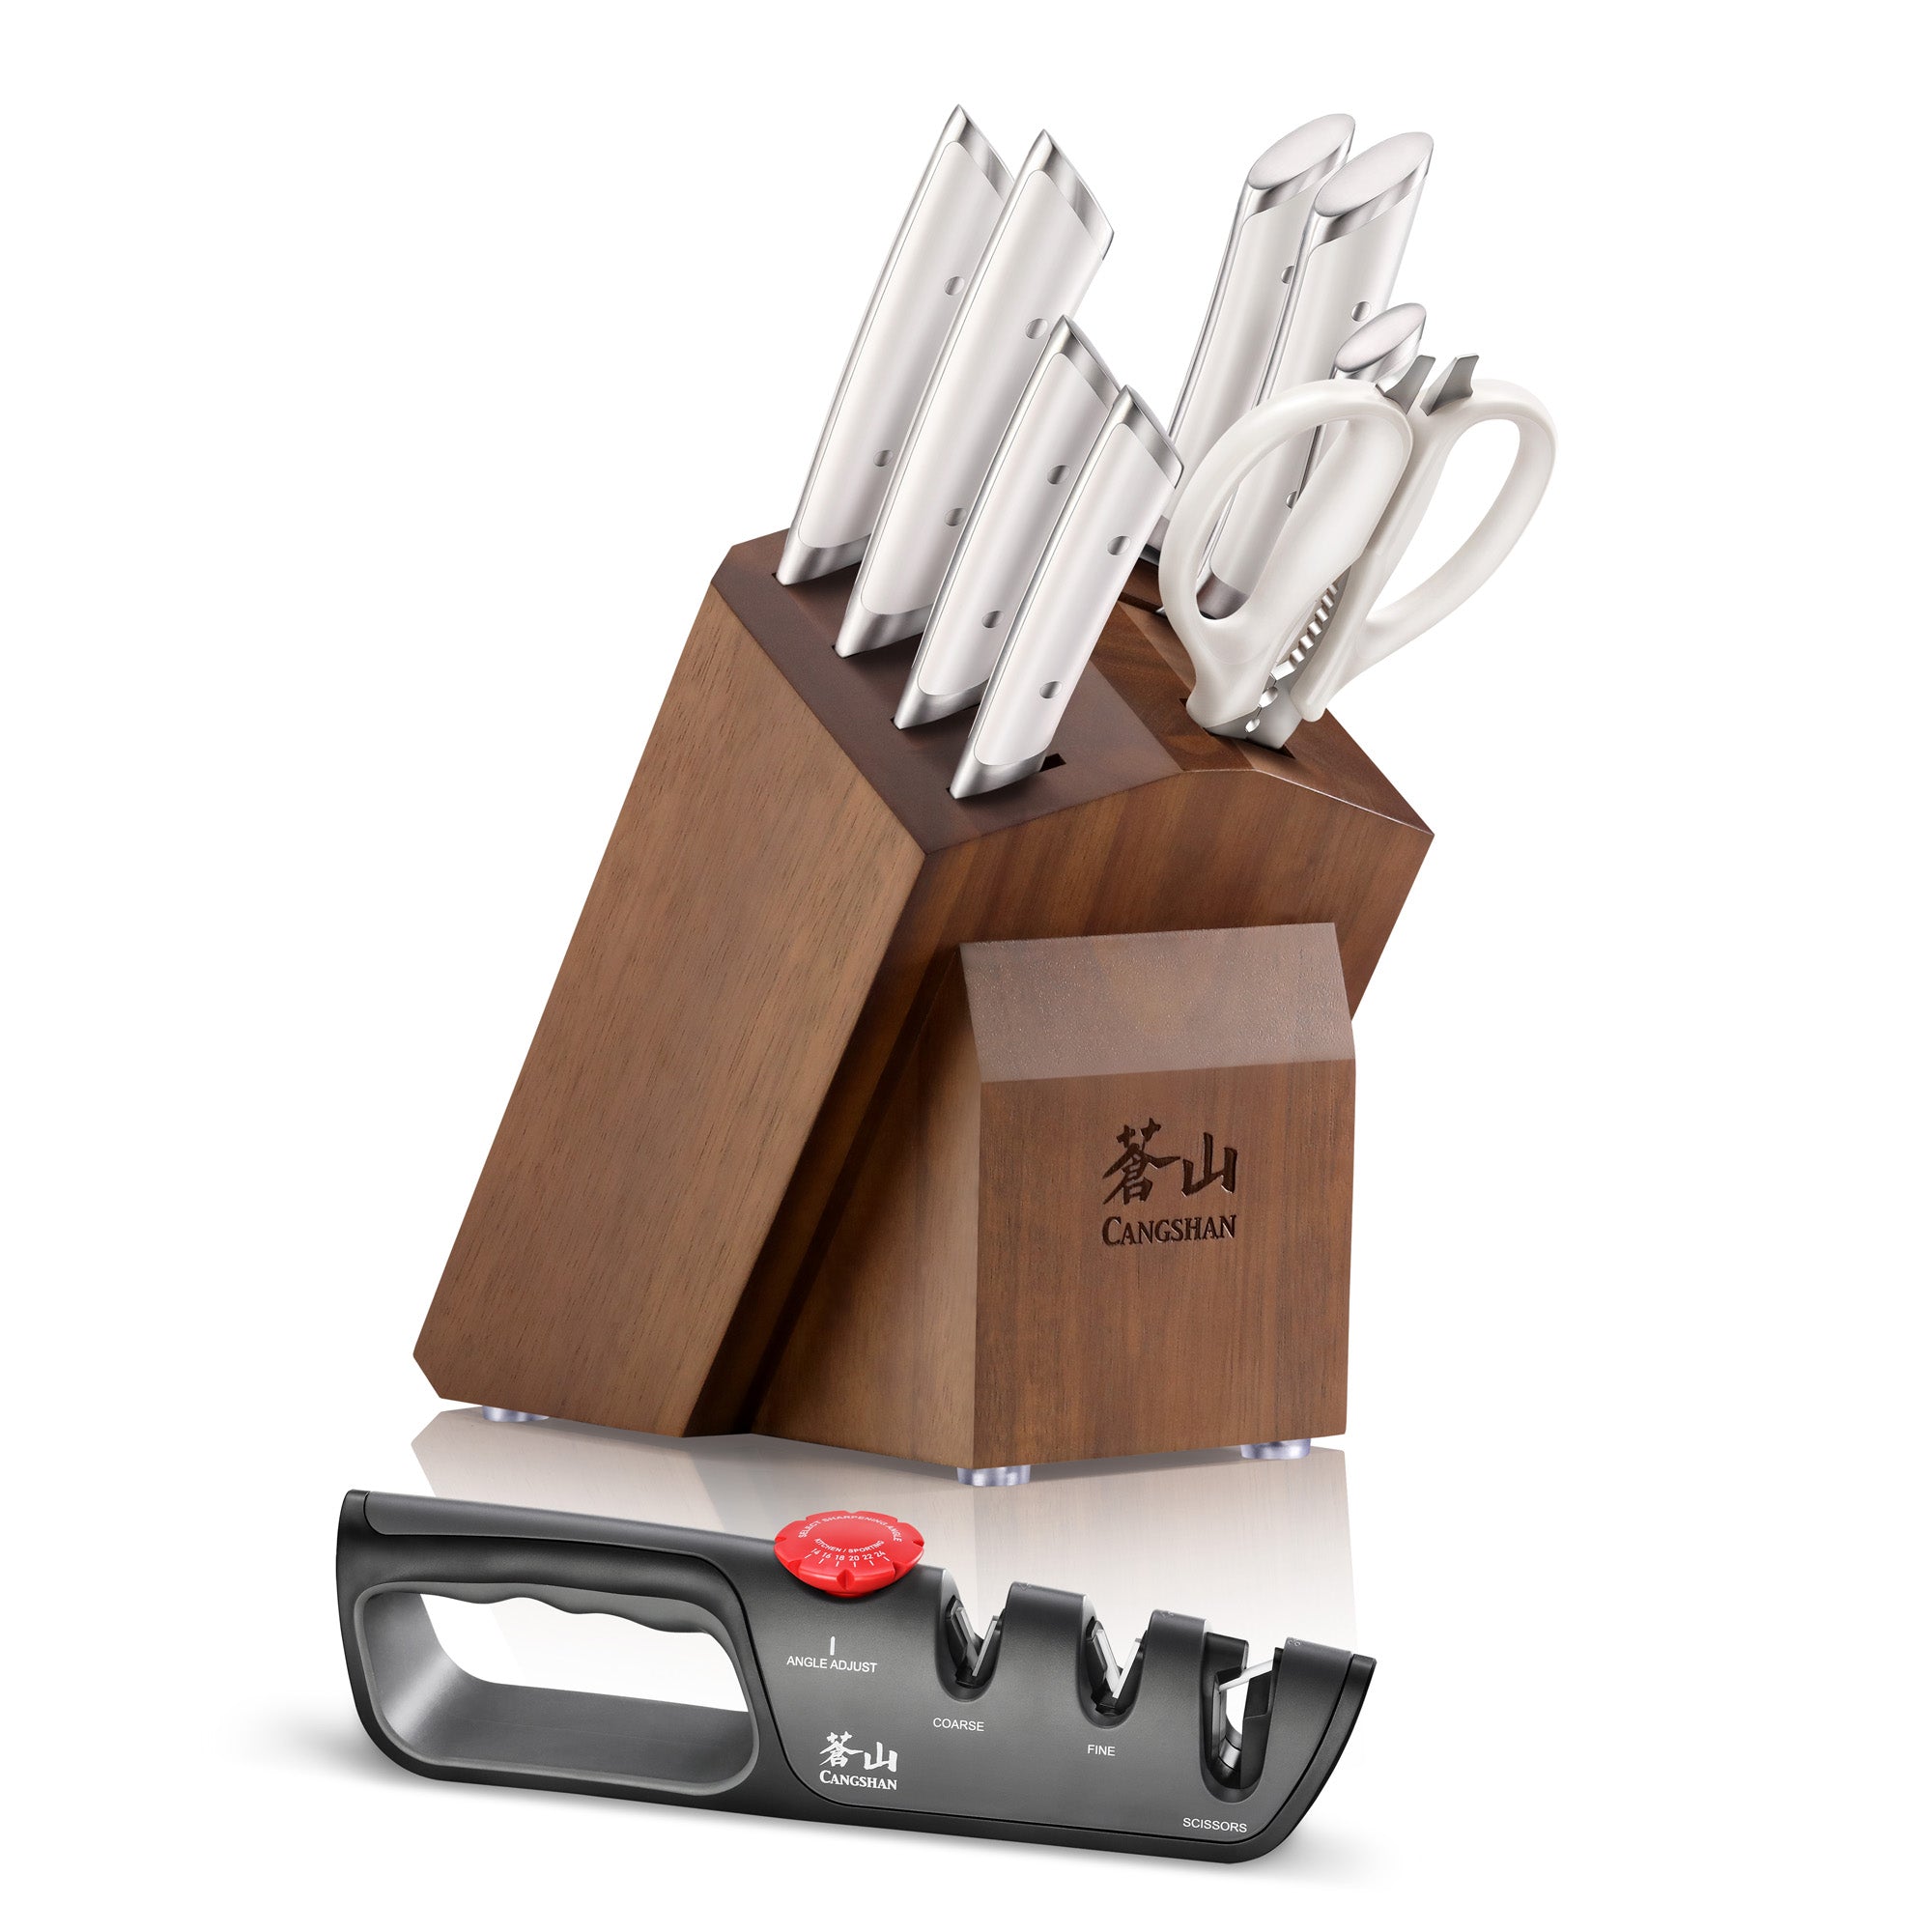 Cangshan HELENA Series German Steel 10-piece Knife Block Set, White